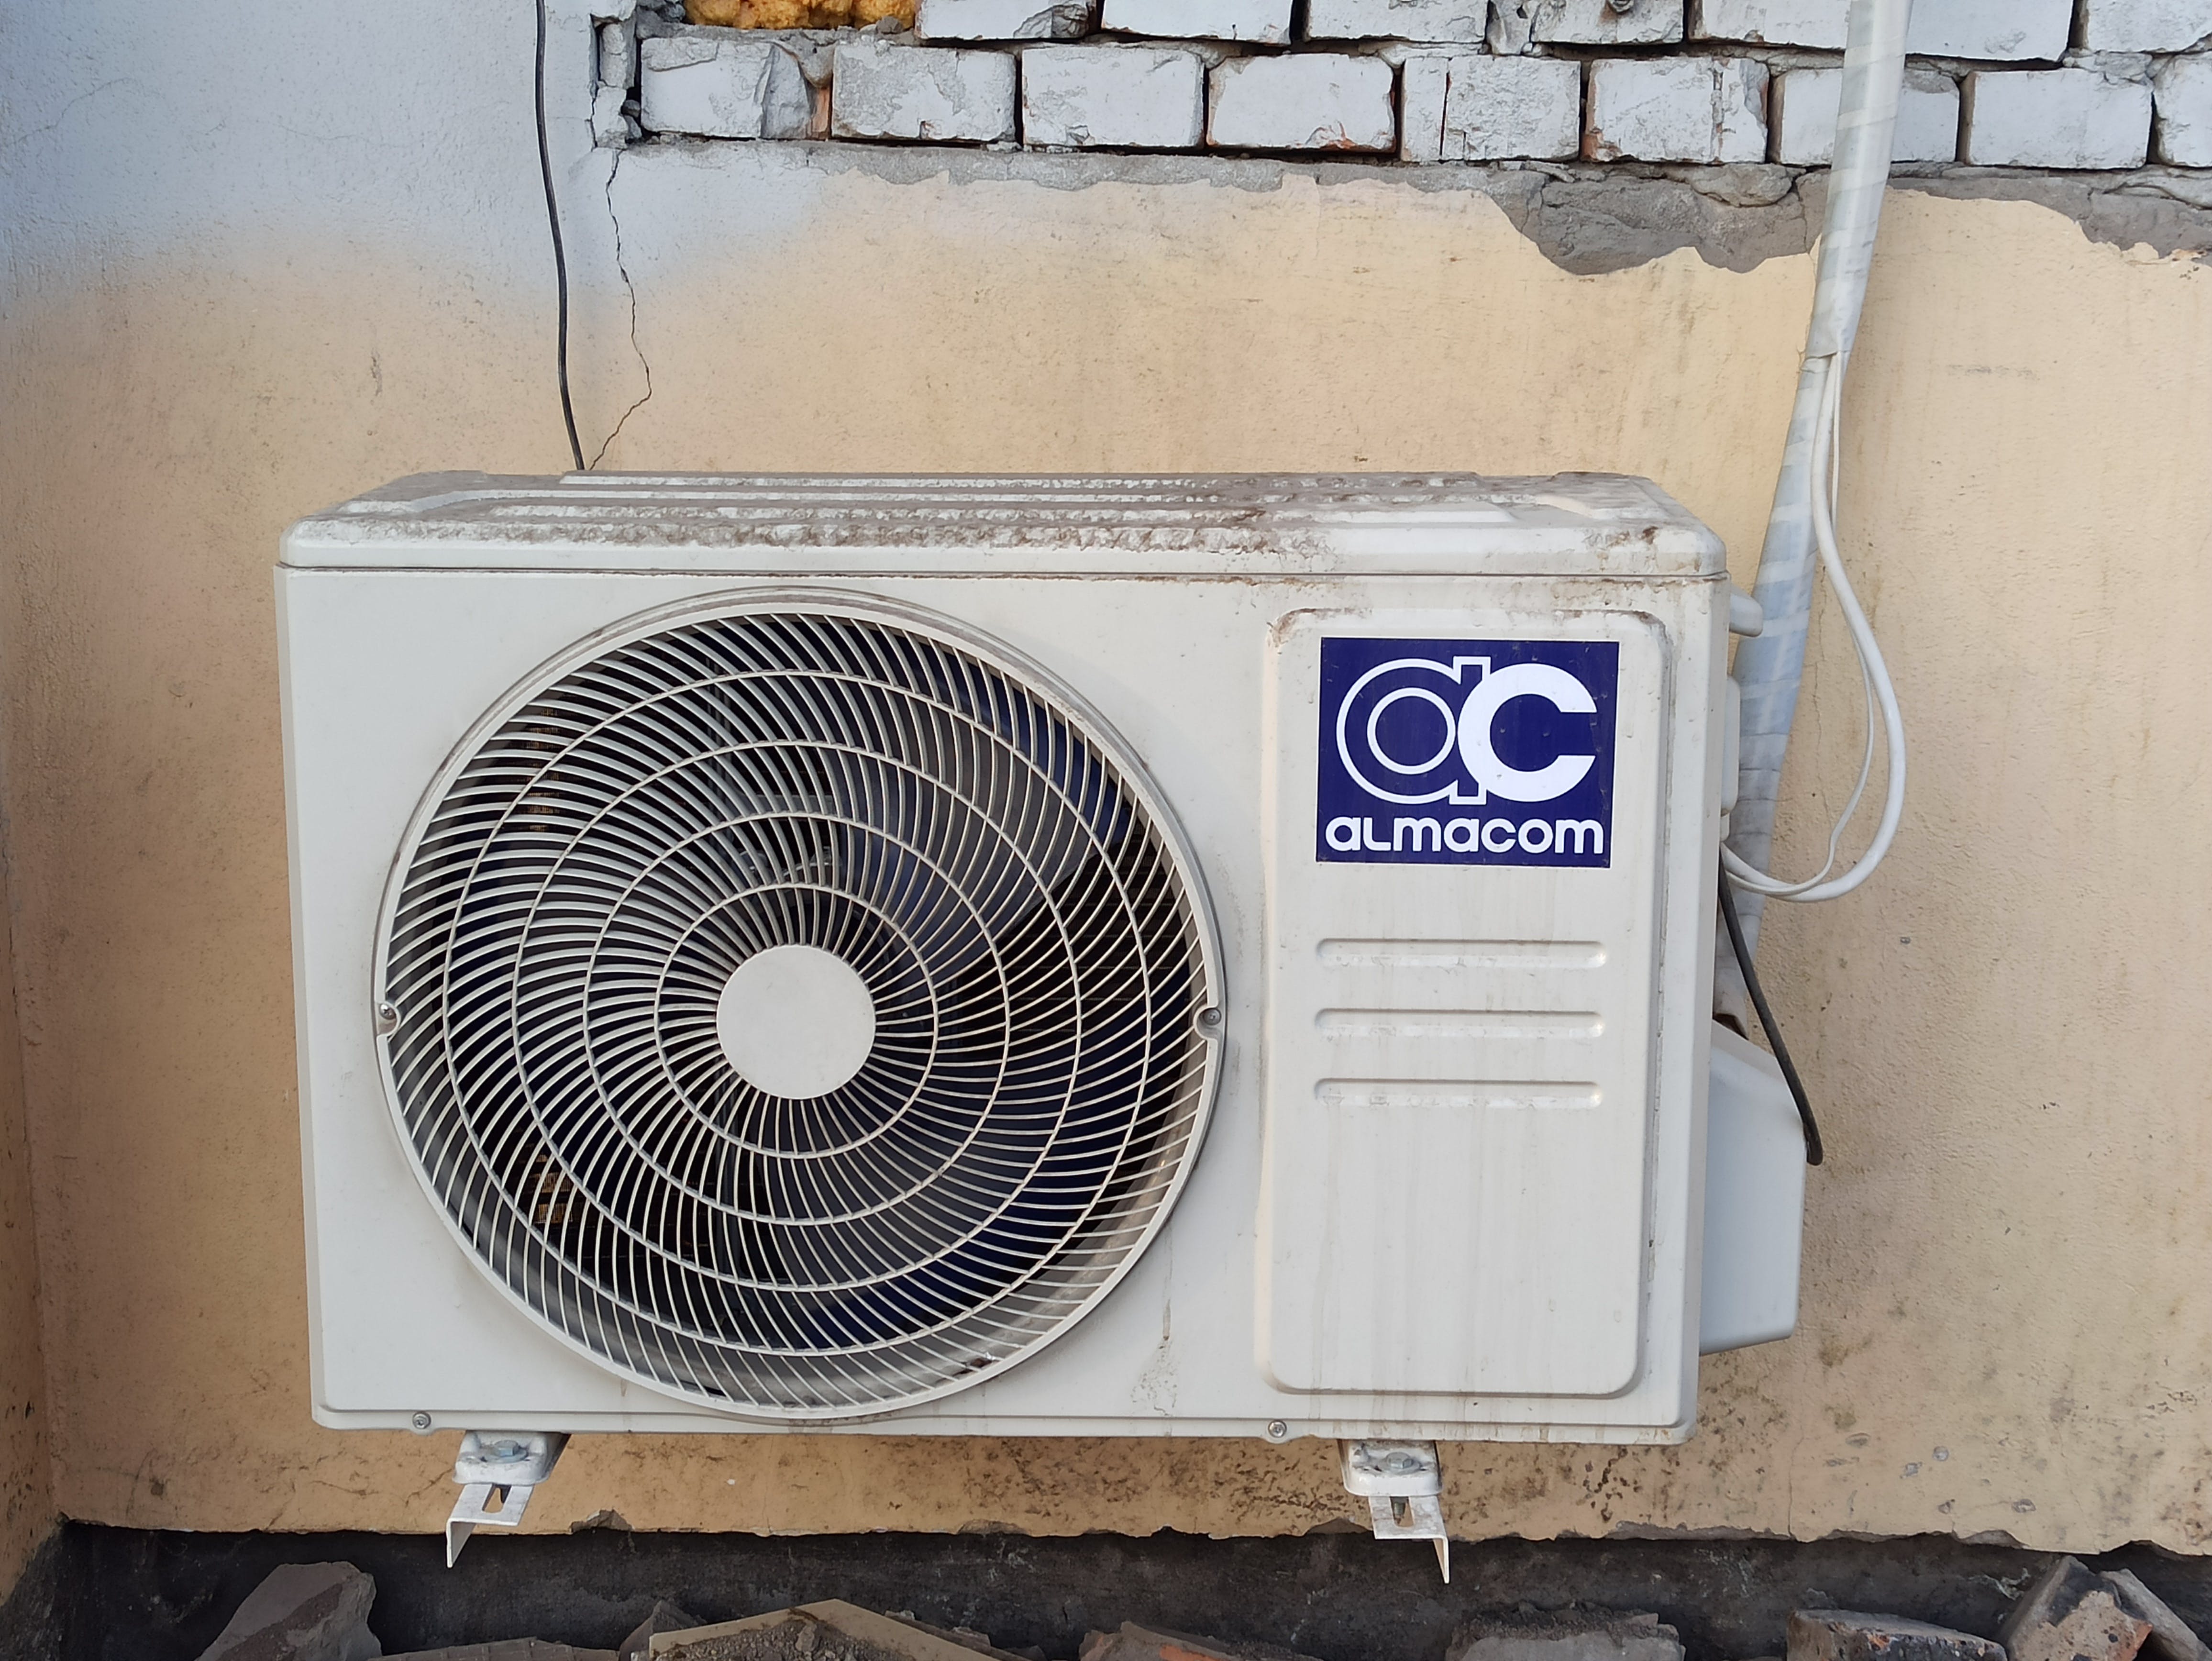 Unité de climatisation sur un mur. | Source : Pexels